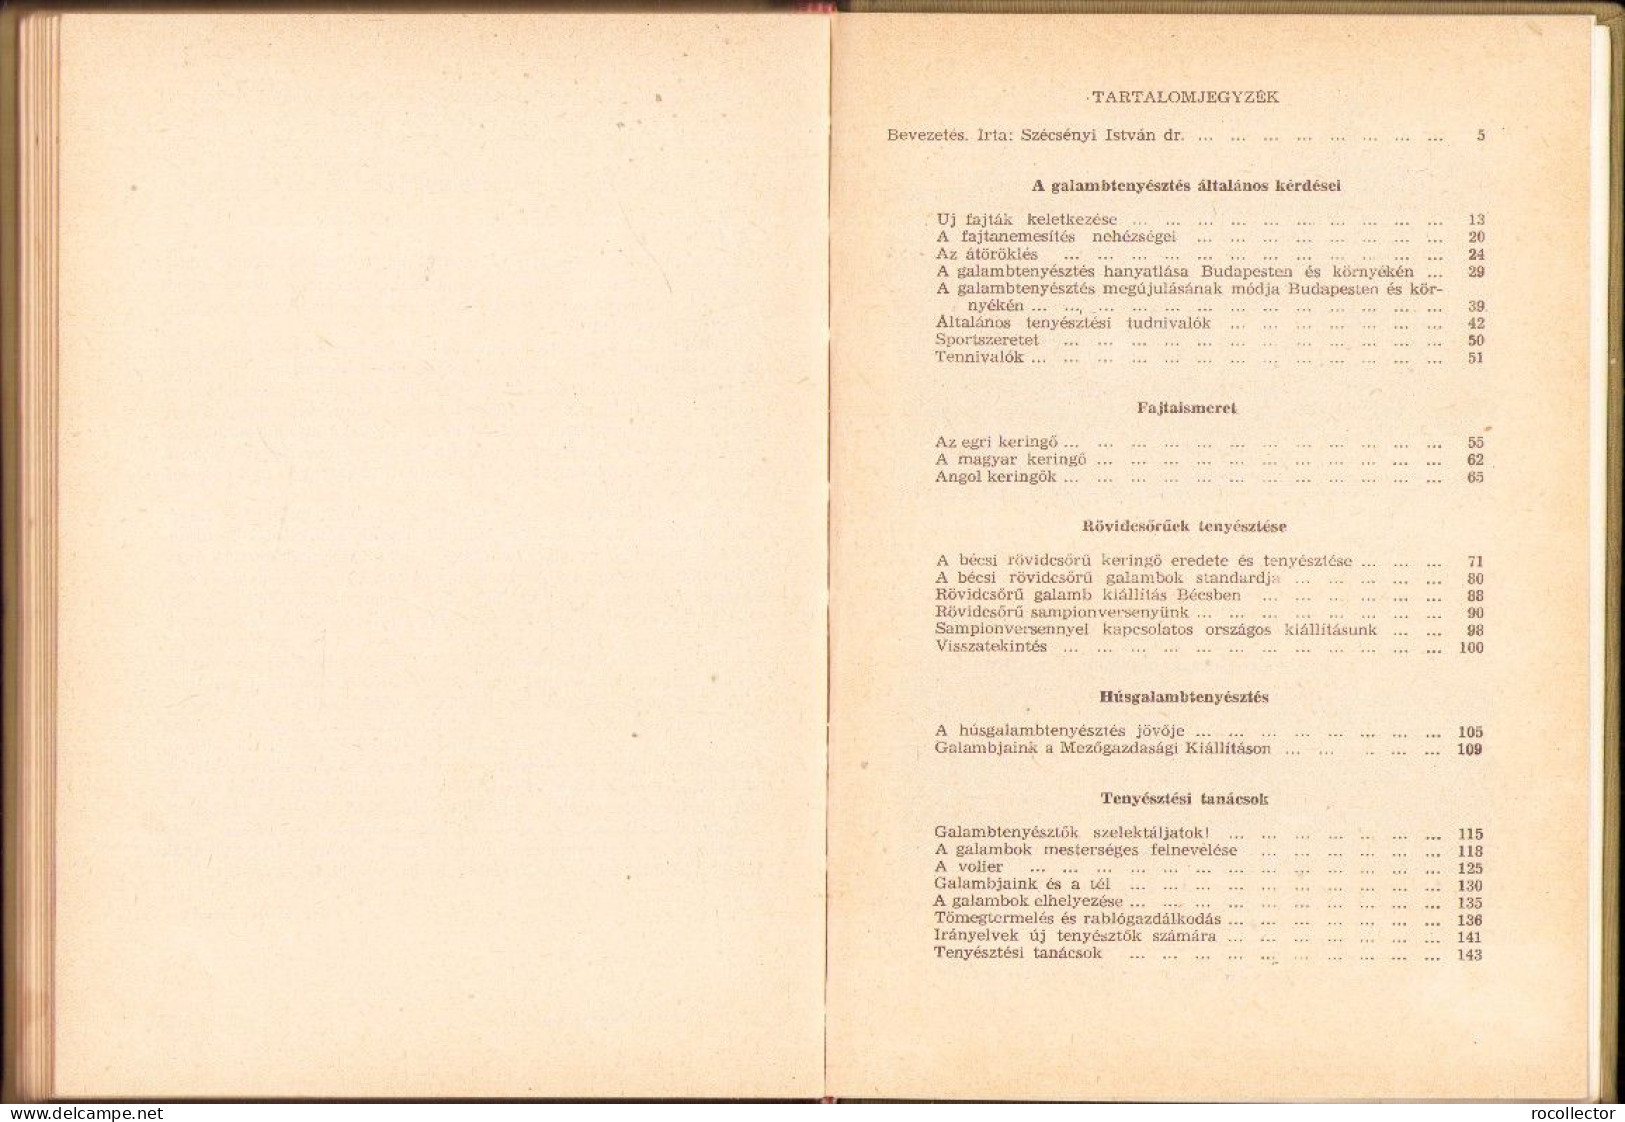 A galambtenyésztésről, Cikkgyűtemény (1928-1960), Bangó Ferenc, 1964 C4365N